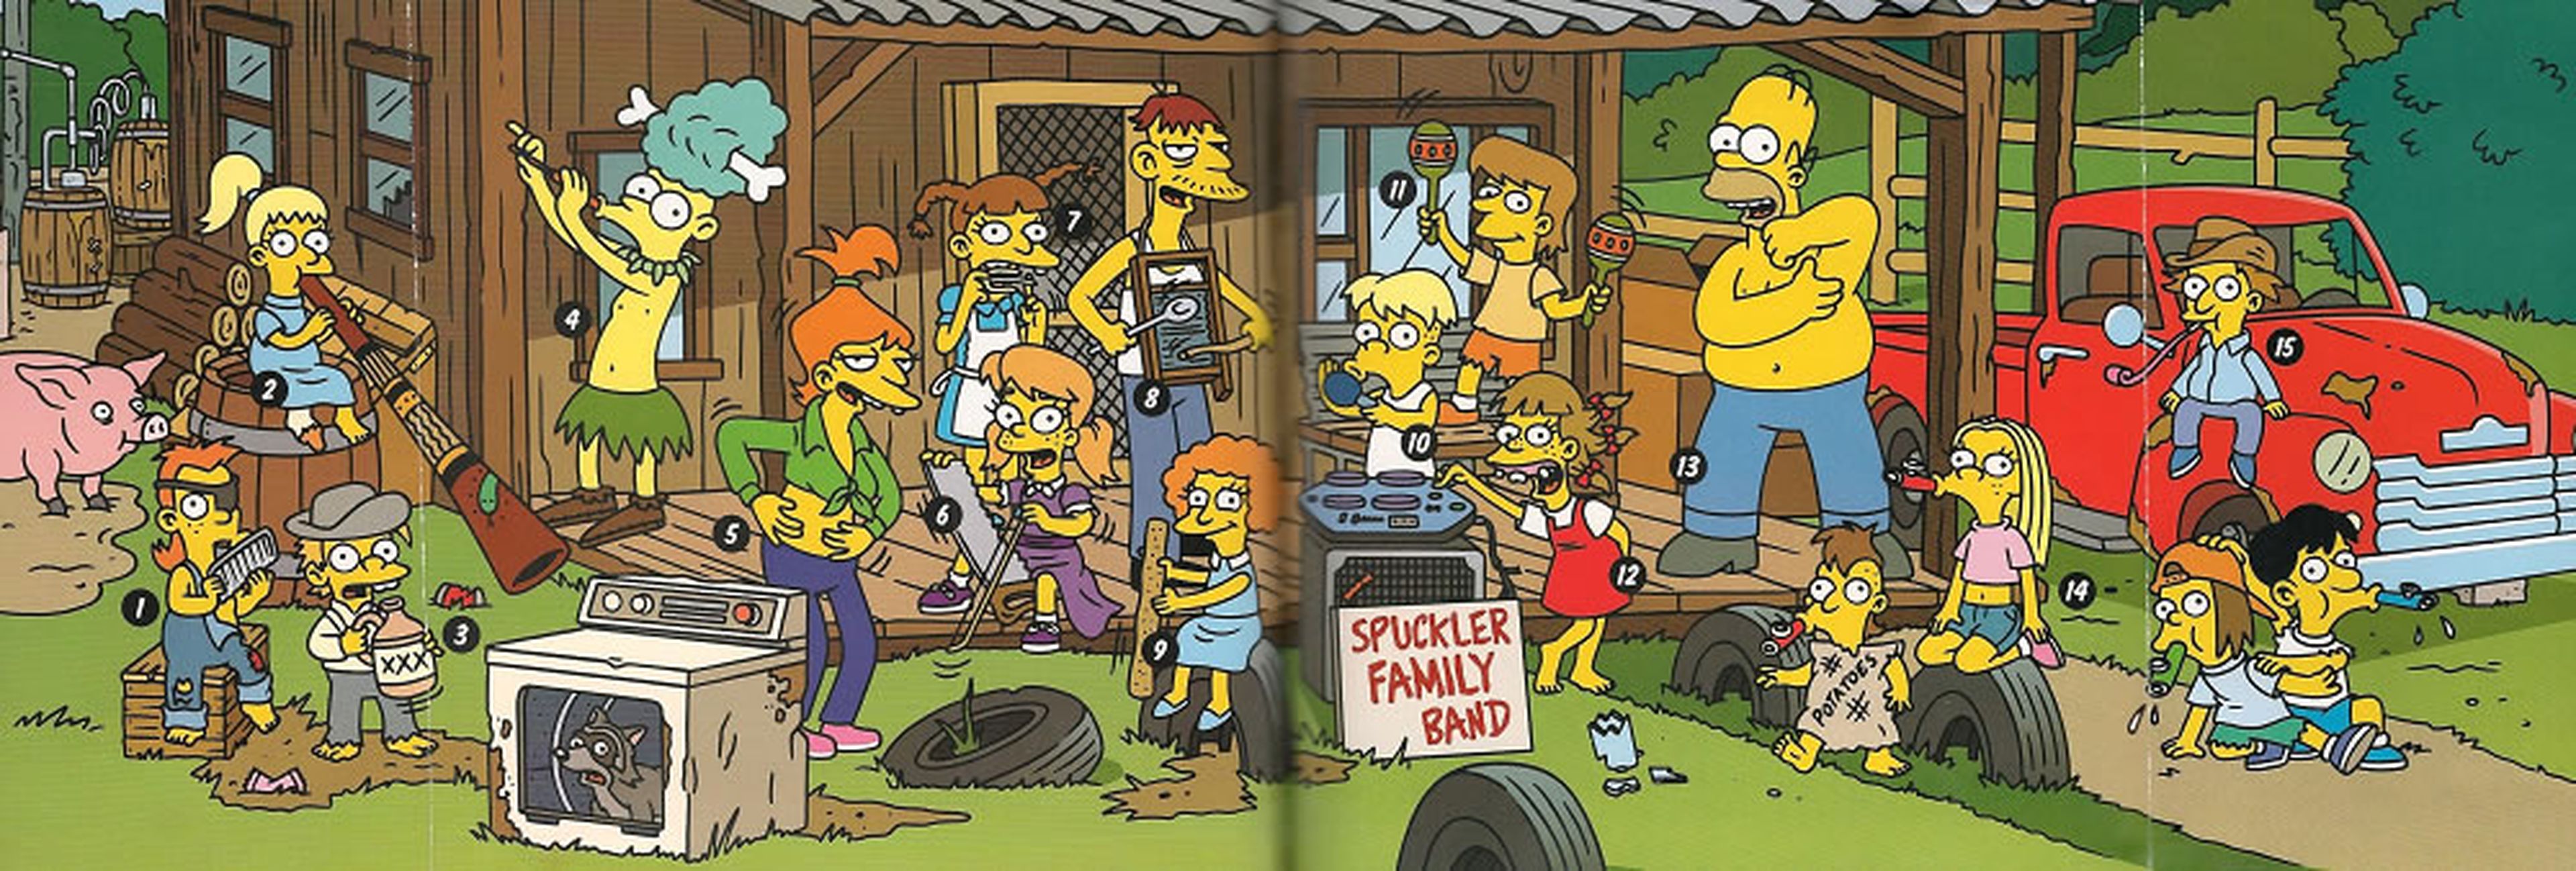 Familia Spuckler - Los Simpson